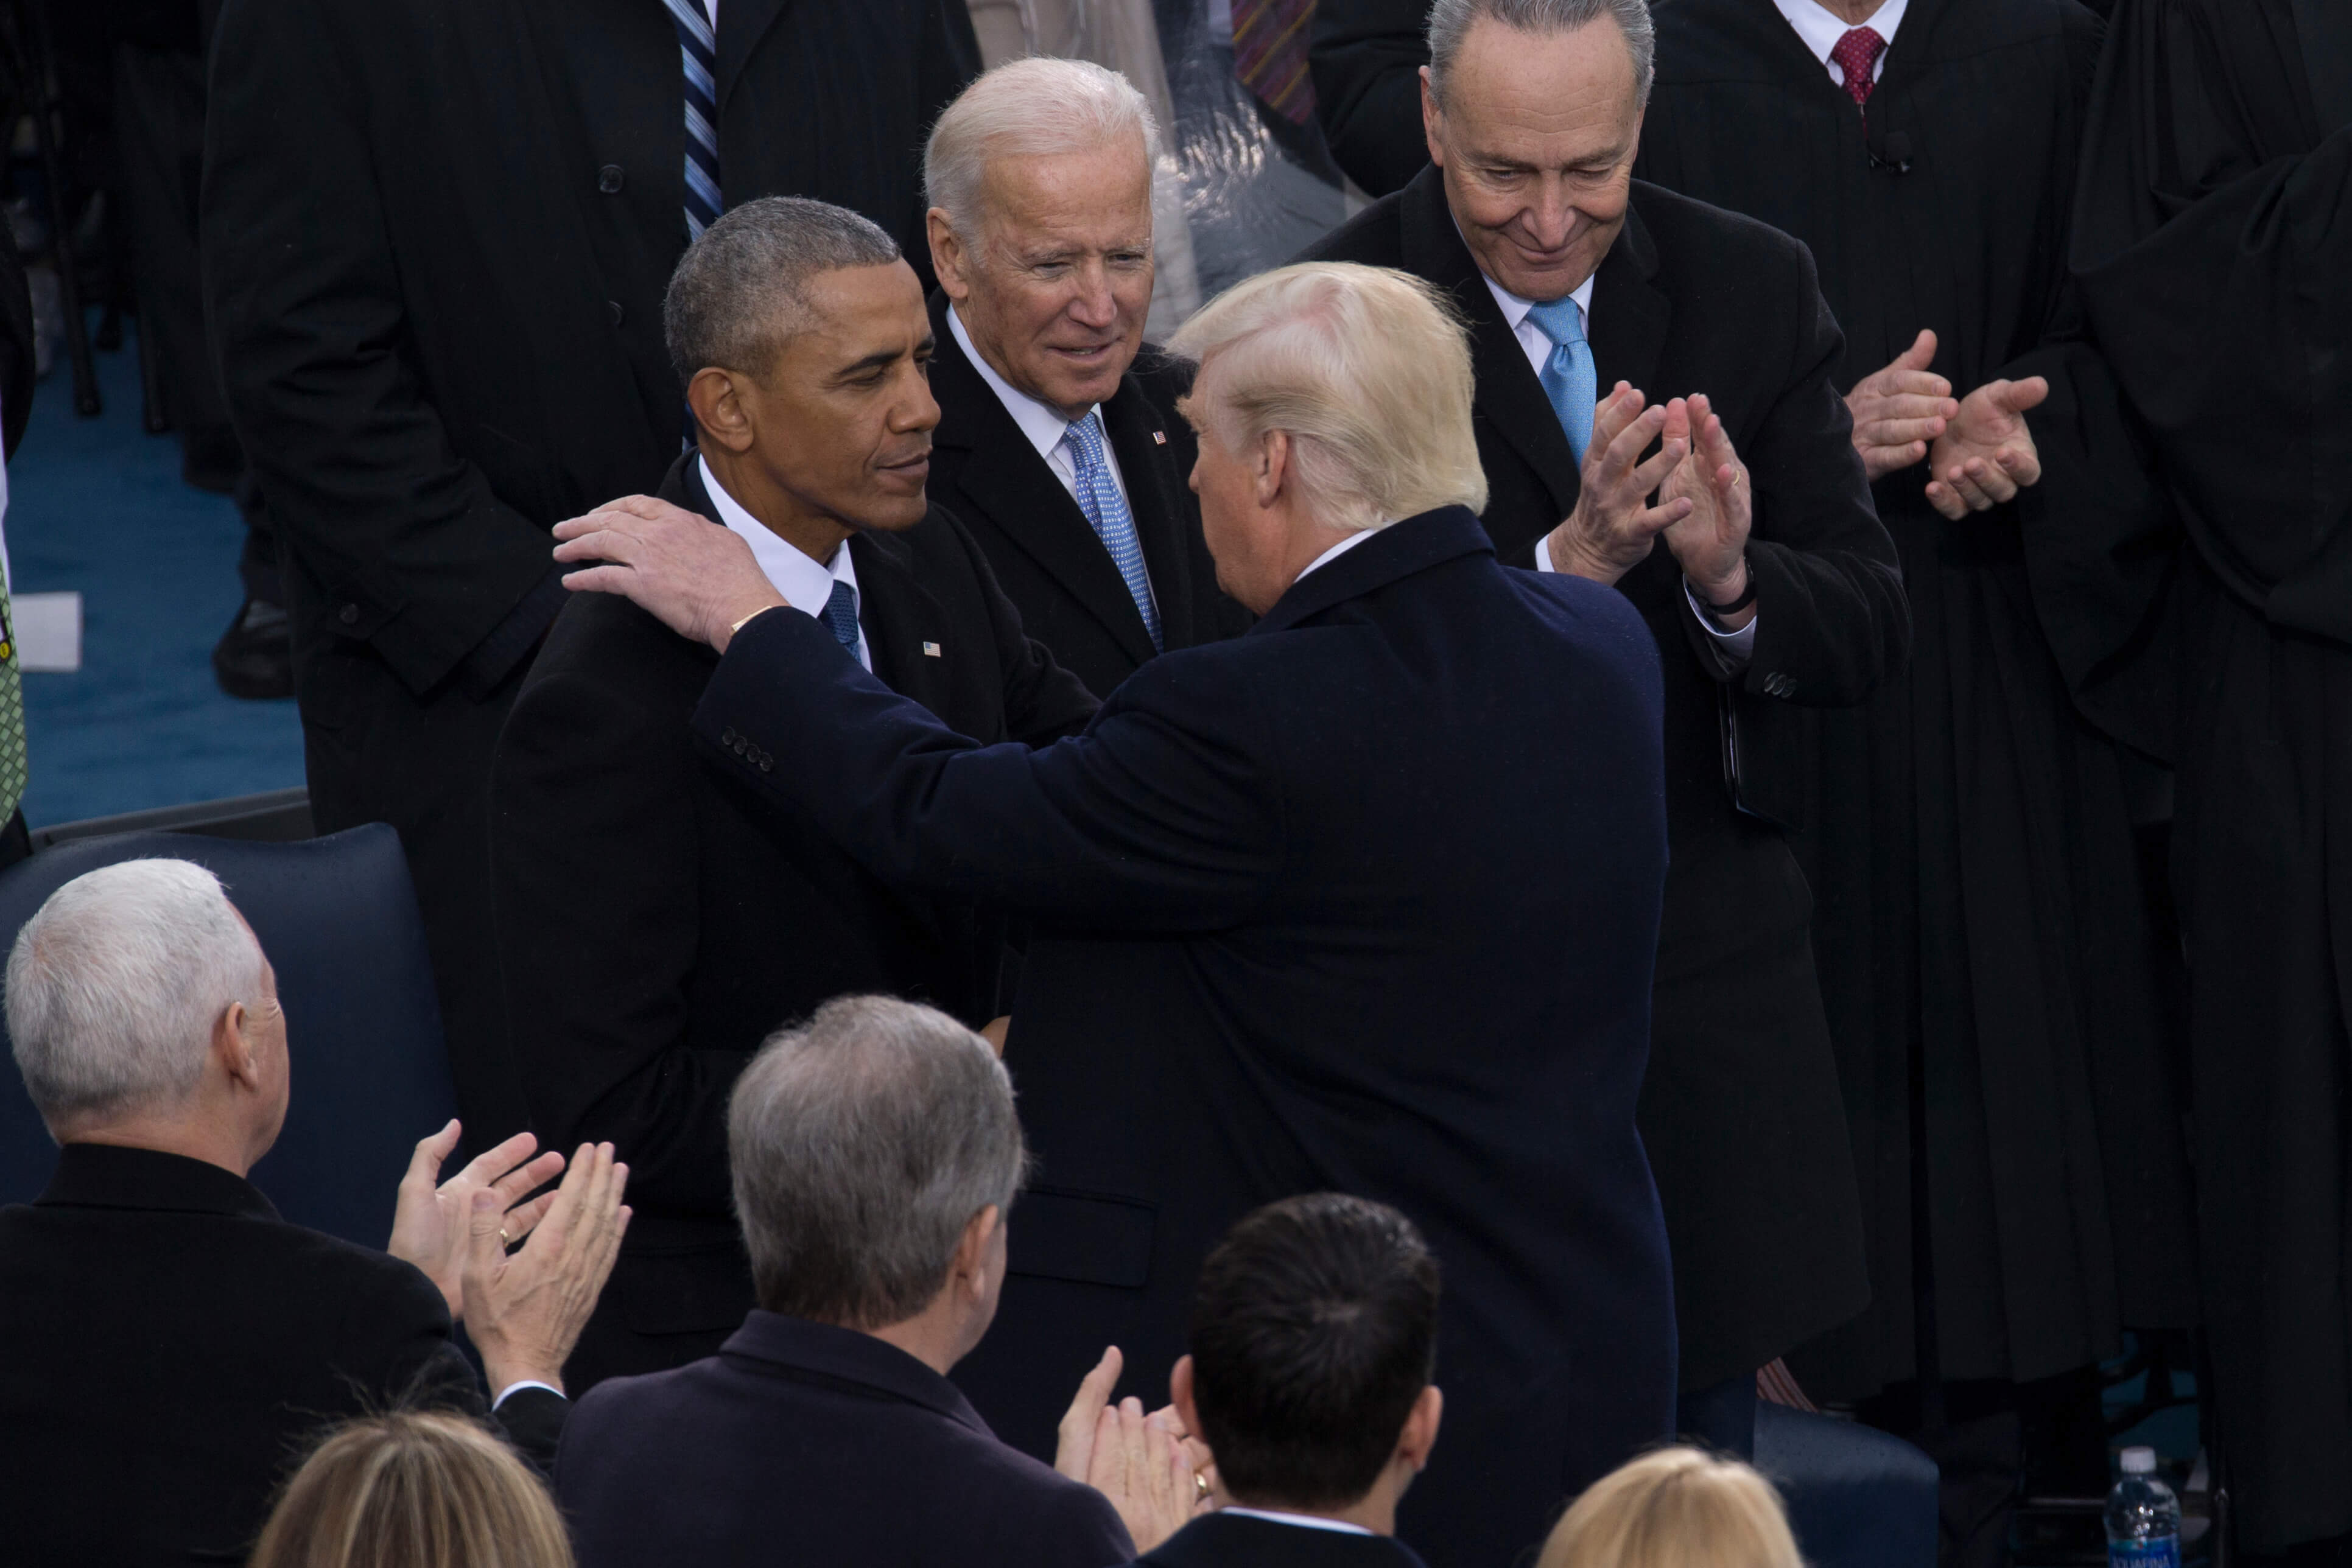 Janssens - Joe Biden met zijn twee voorgangers tijdens de inauguratie van Donald Trump in 2017. By Lance Cpl. Cristian Ricardo